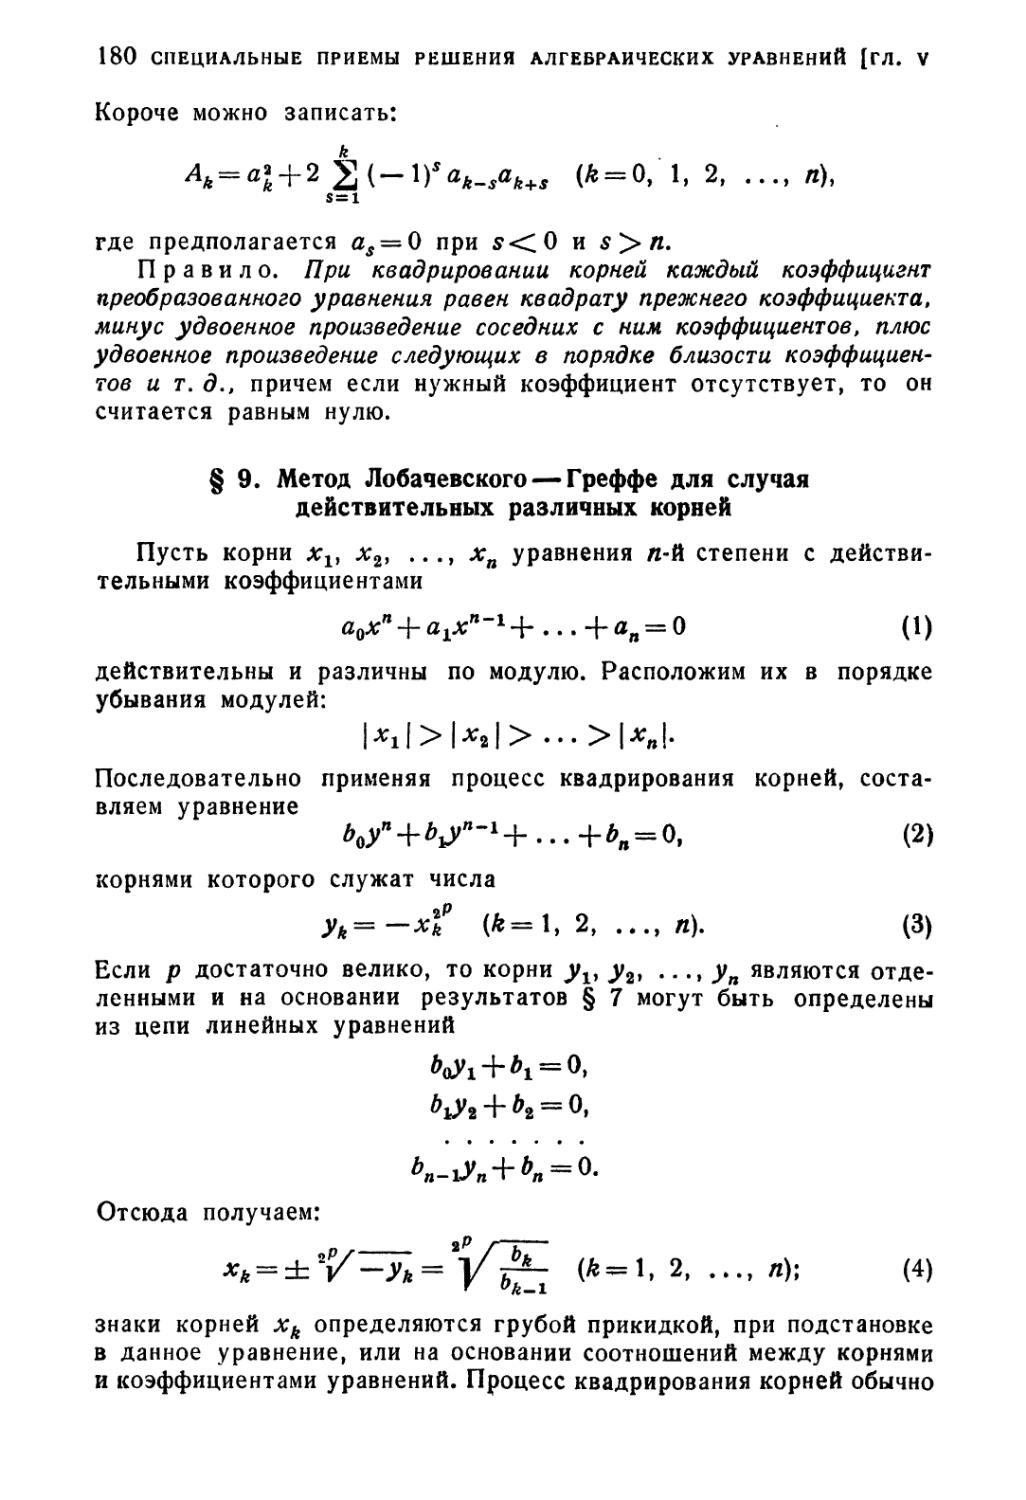 § 9. Метод Лобачевского-Греффе для случая действительных различных корней